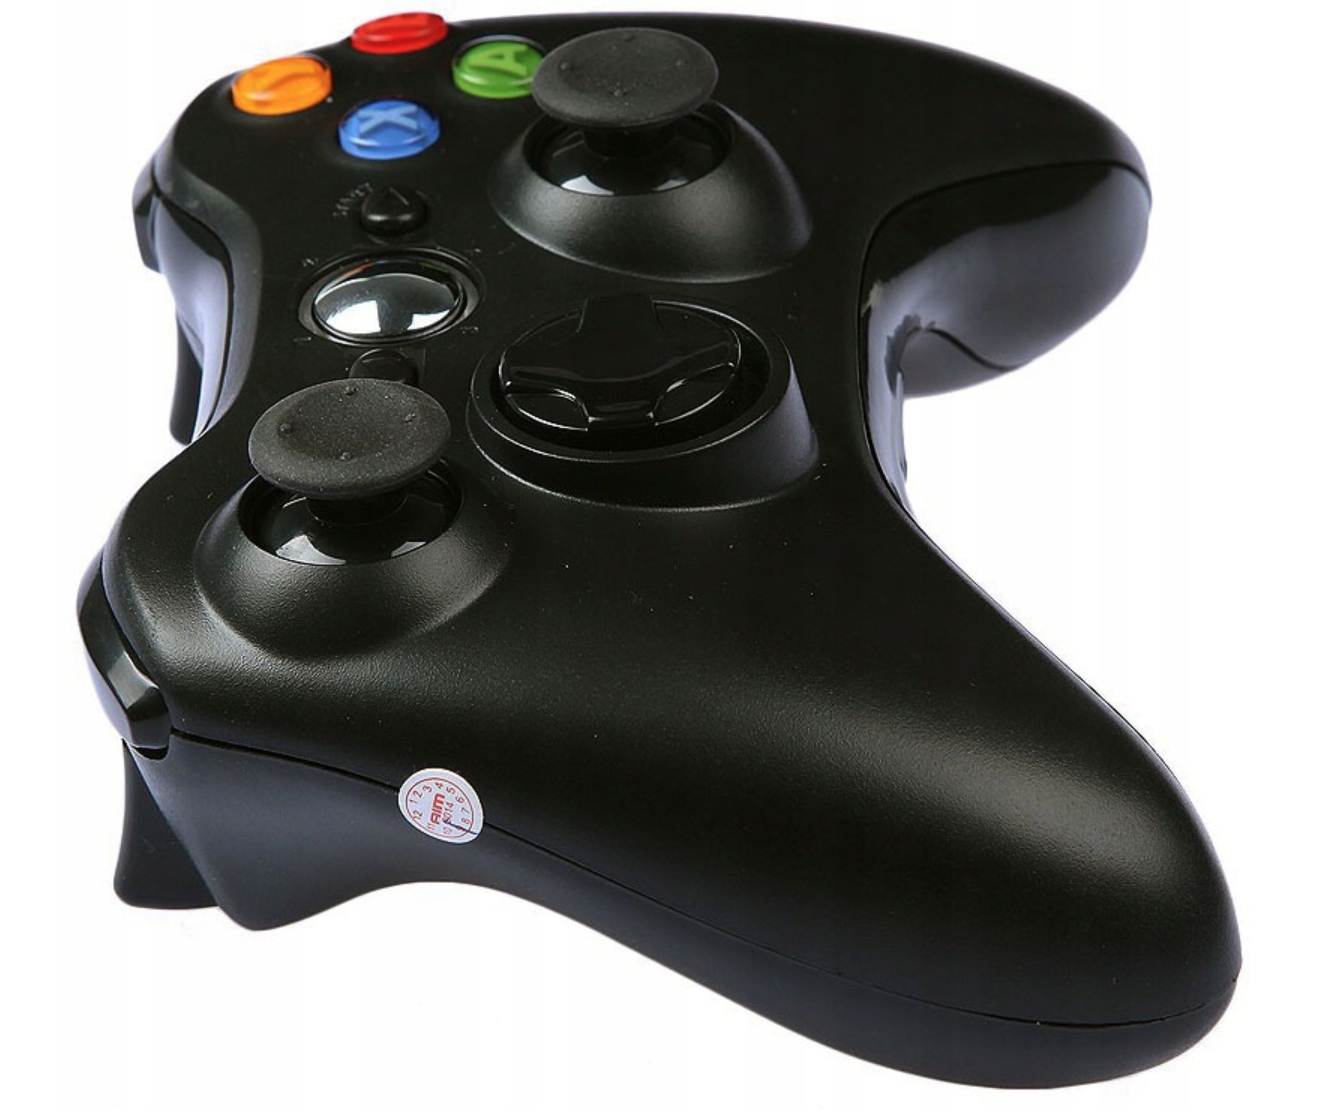 X 360 джойстик. Джойстик Xbox 360. Геймпад Xbox 360 Controller. Джойстик Xbox 360 беспроводной. Геймпад для Xbox 360 (черный).